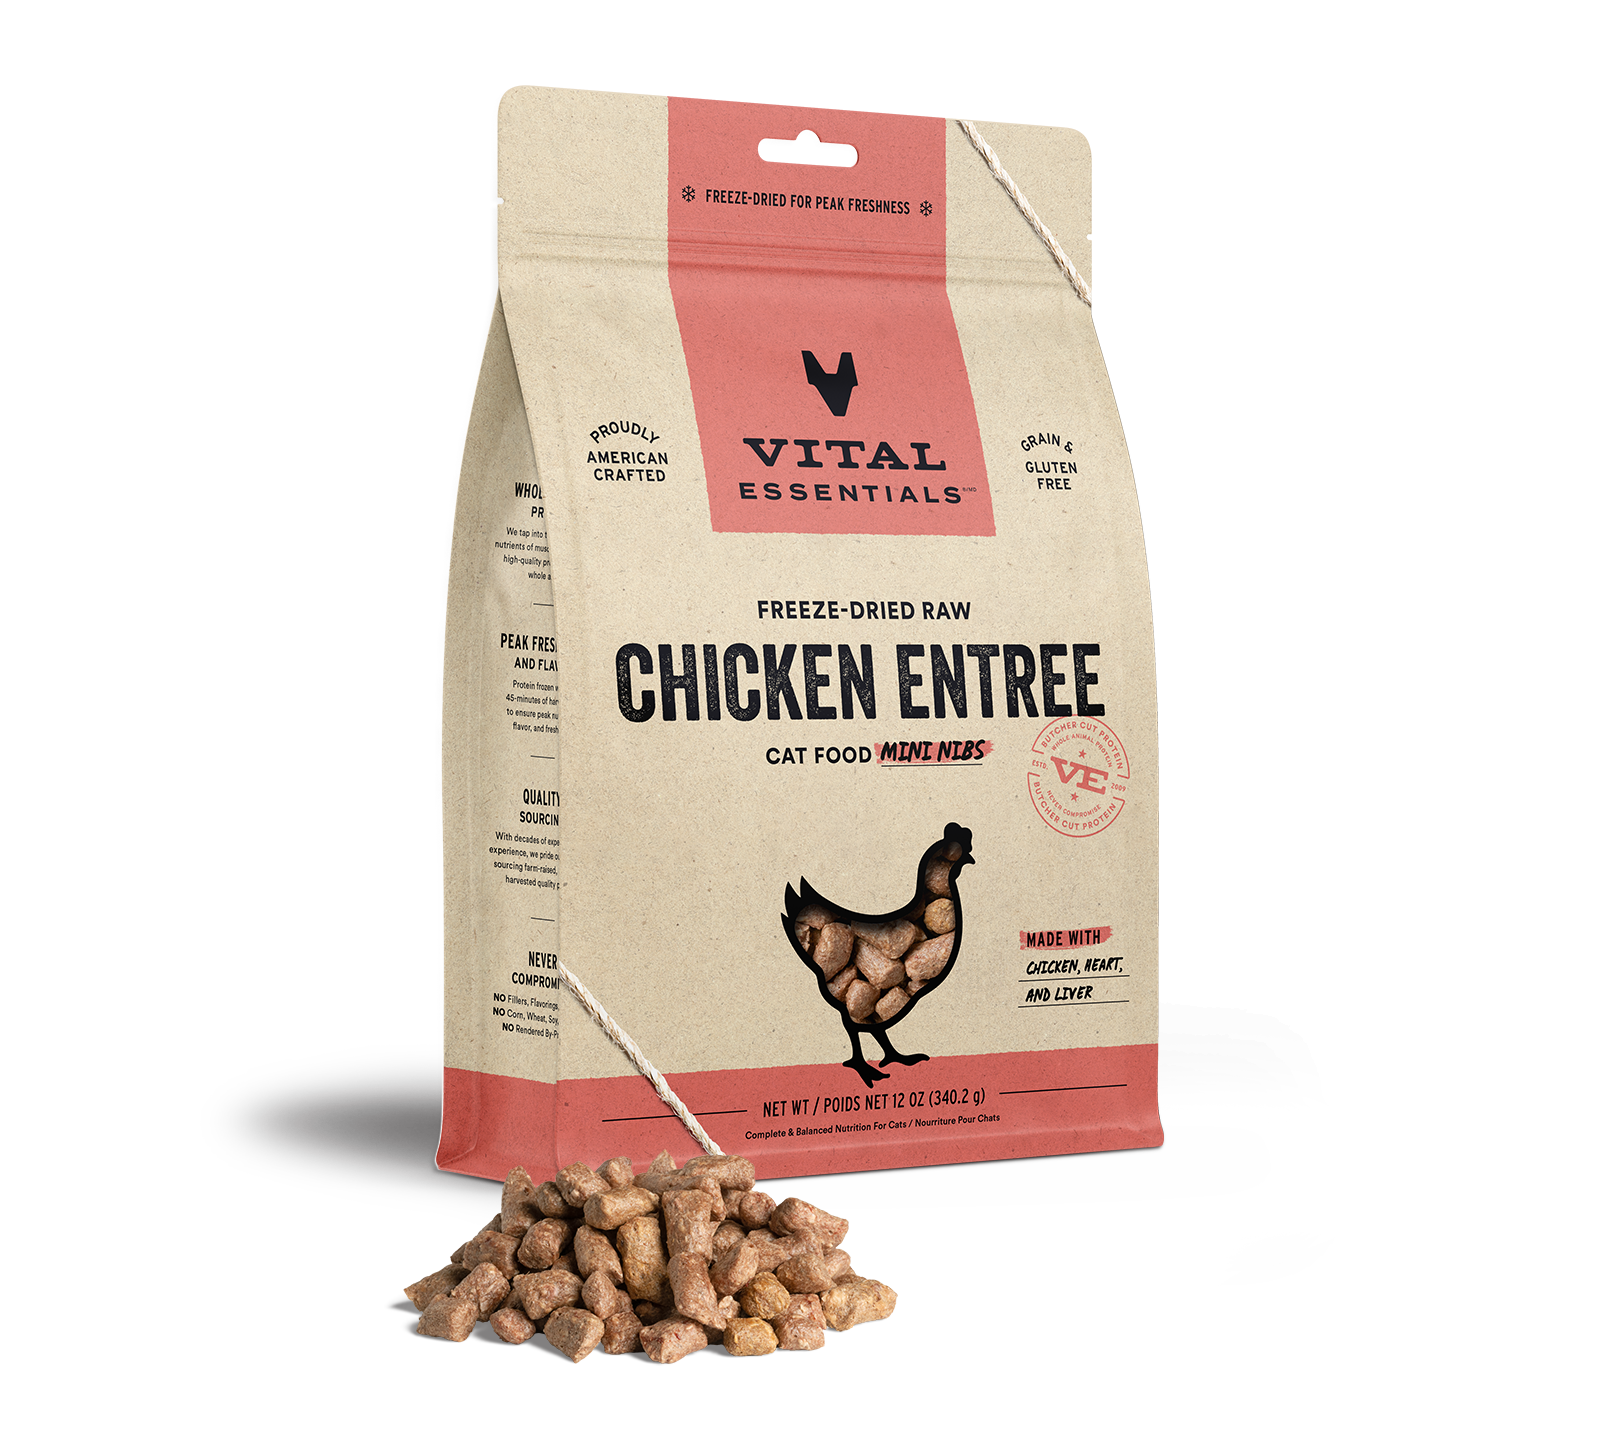 Vital Essentials Freeze-Dried Raw Chicken Entree Cat Food Mini Nibs, 12 oz - Health/First Aid